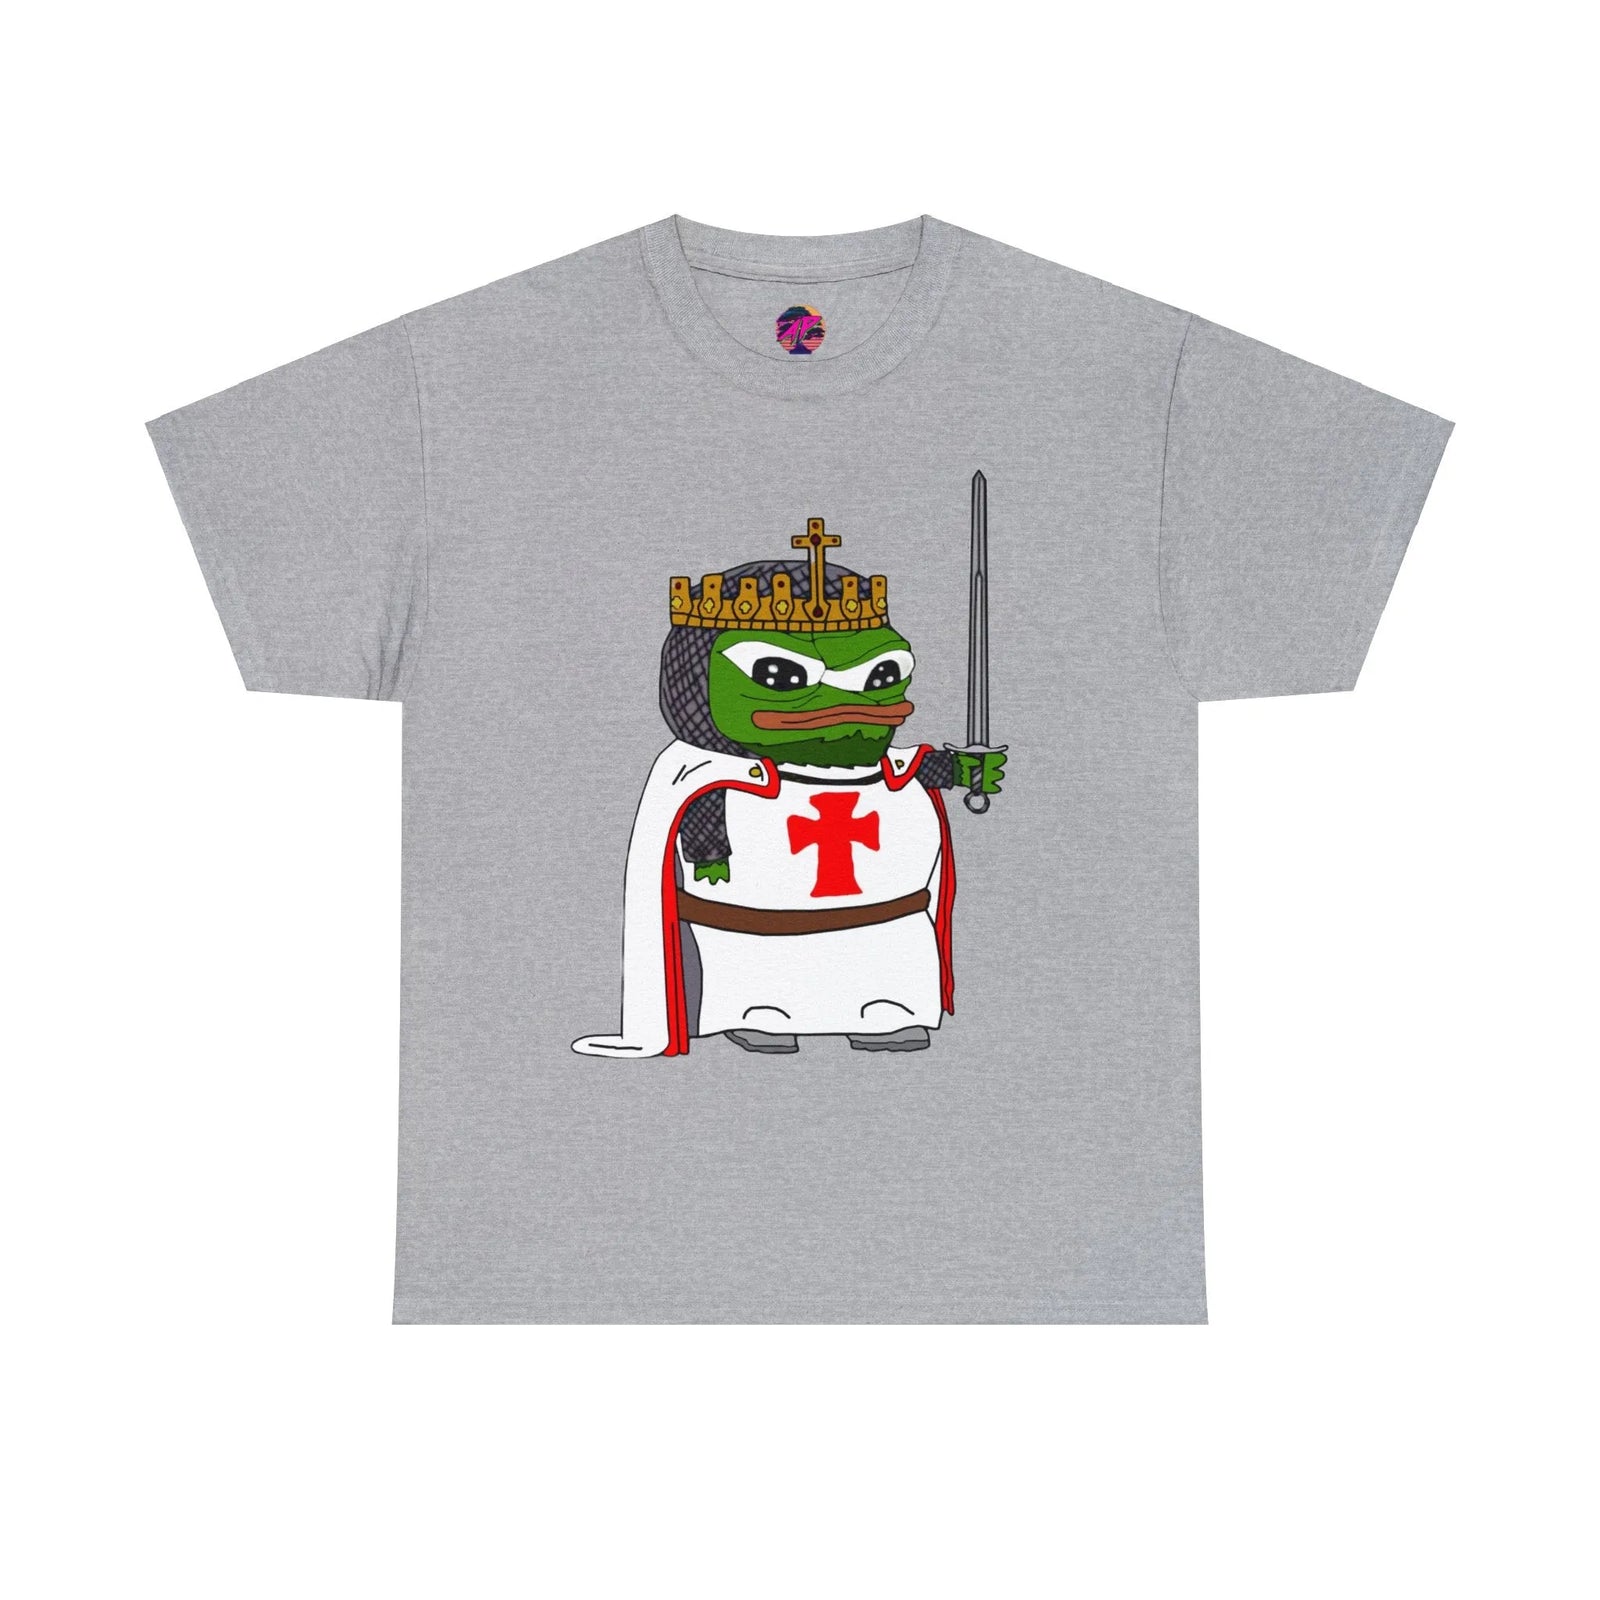 Pepe the Frog Crusader Knight t-shirt!